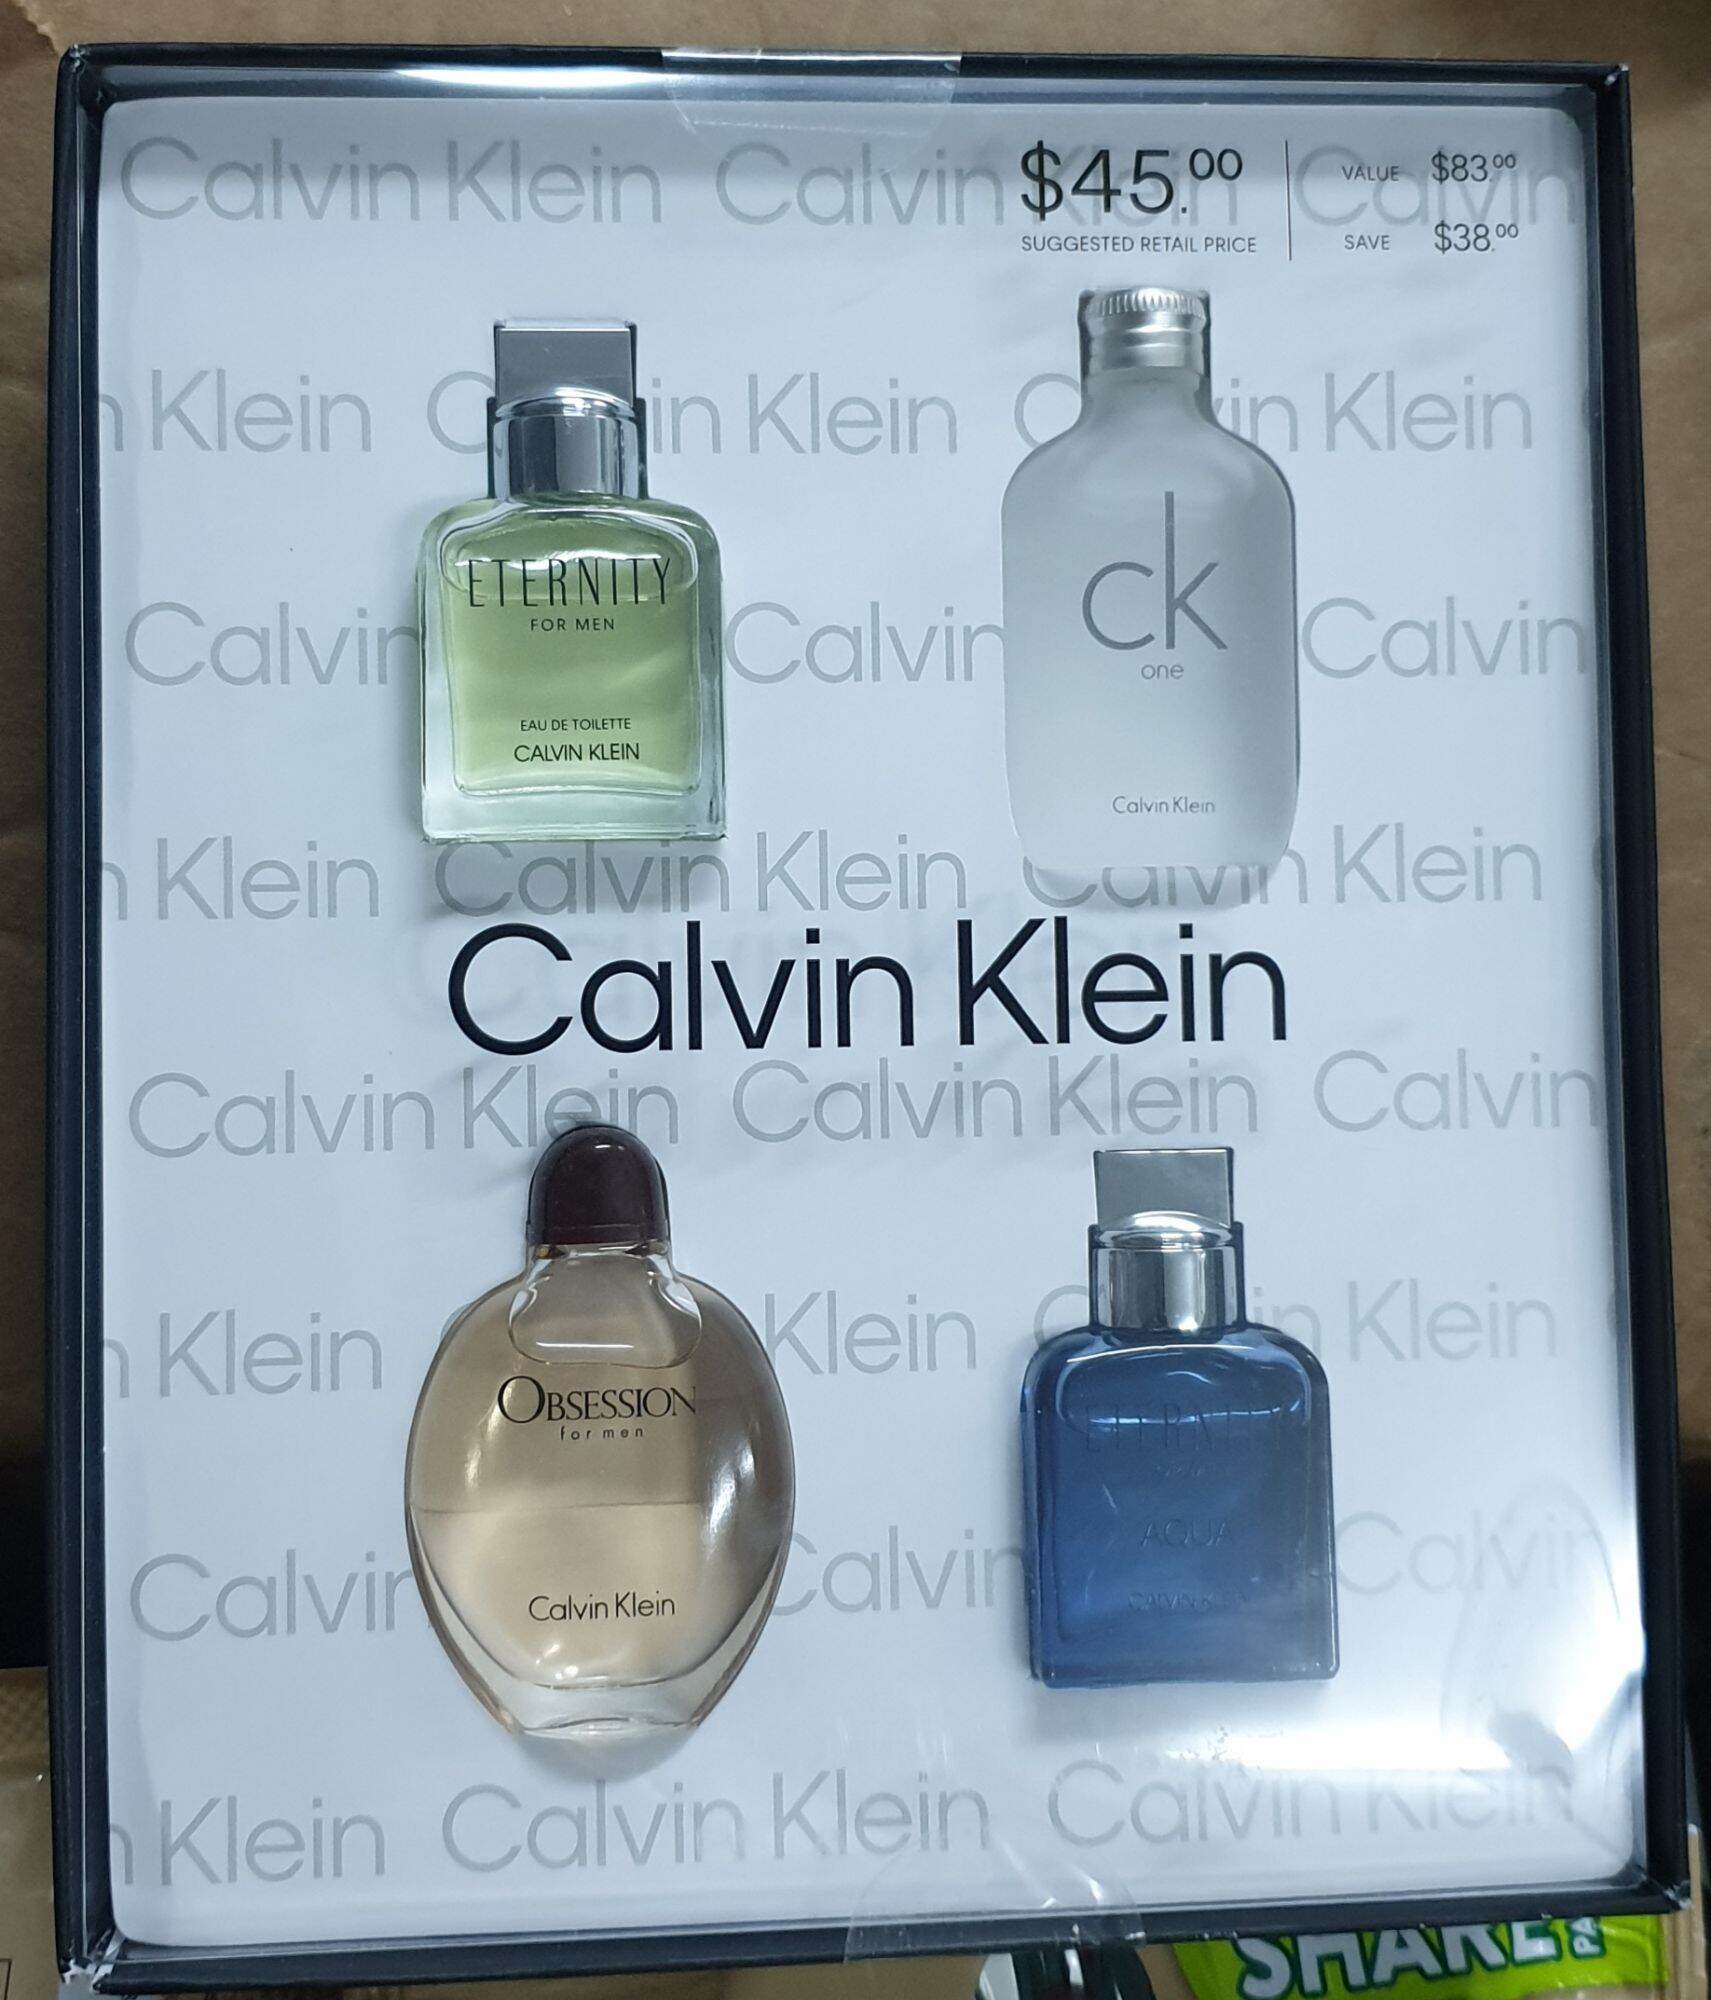 🌻🌻 [Chính hãng] Nước hoa nam Calvin Klein 4 mùi cho các anh lựa chọn trãi nghiệm mùi, chai 15ml